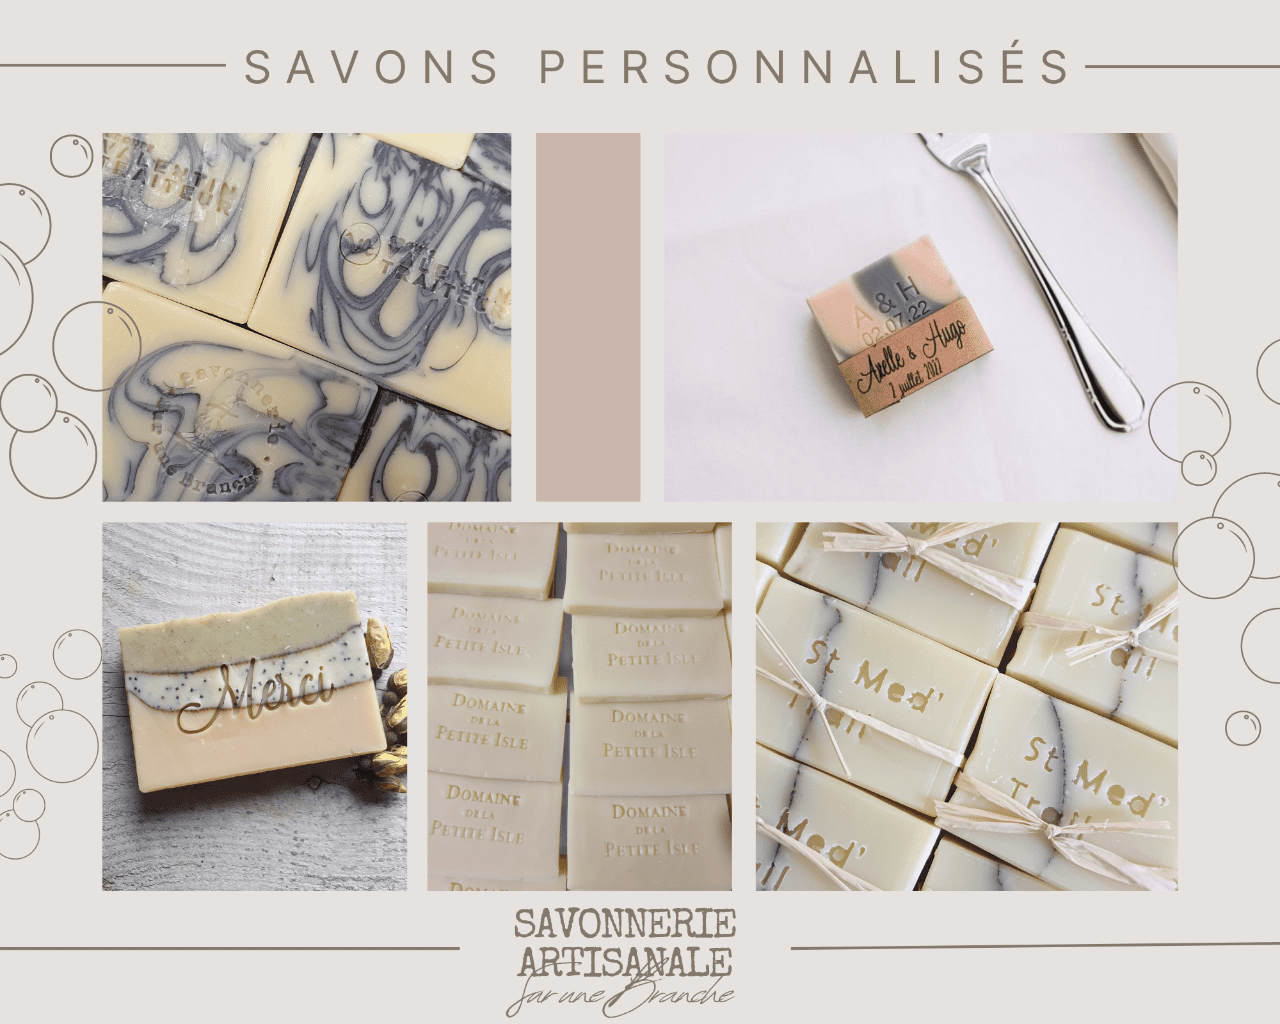 savons_personnalises_boutique_savonnerie_artisanale_sur_une_branche.png